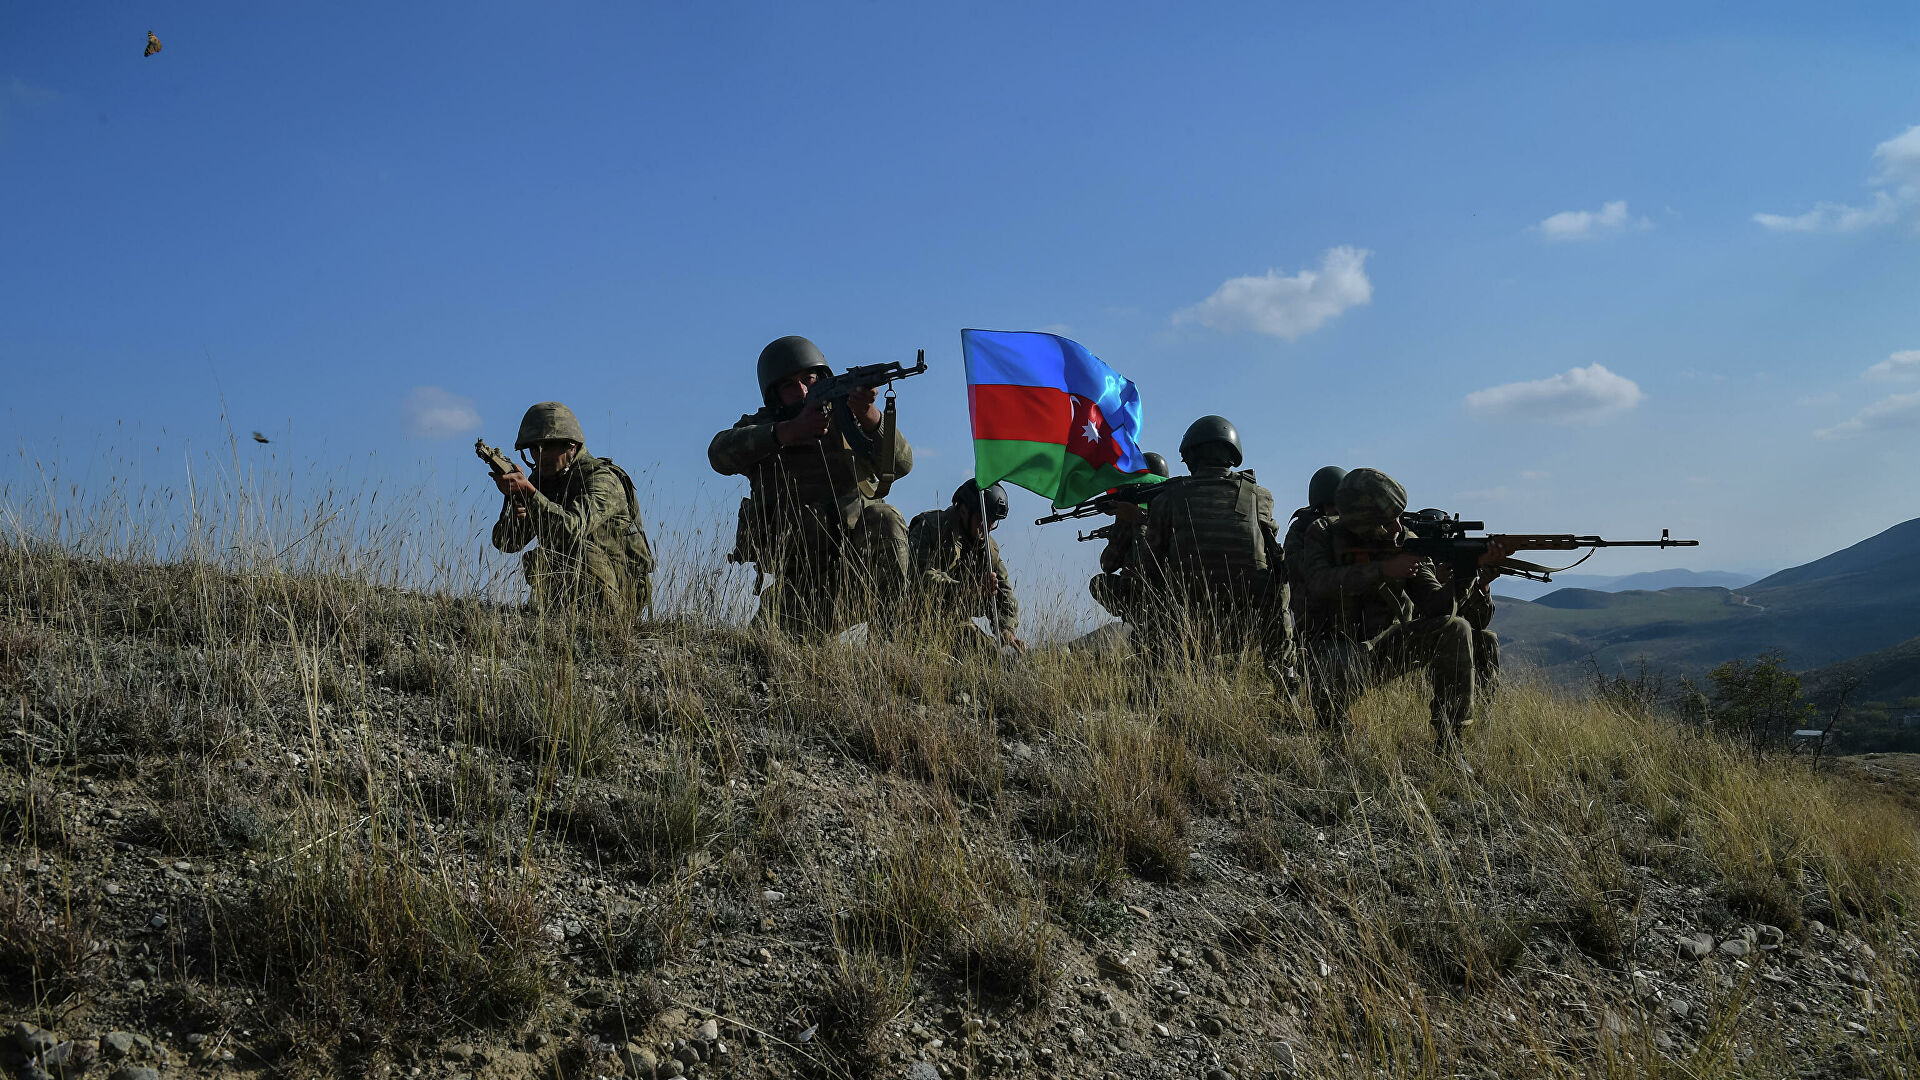 Скопление азербайджанских войск на передовой превышает масштабы 44-дневной войны - мнение